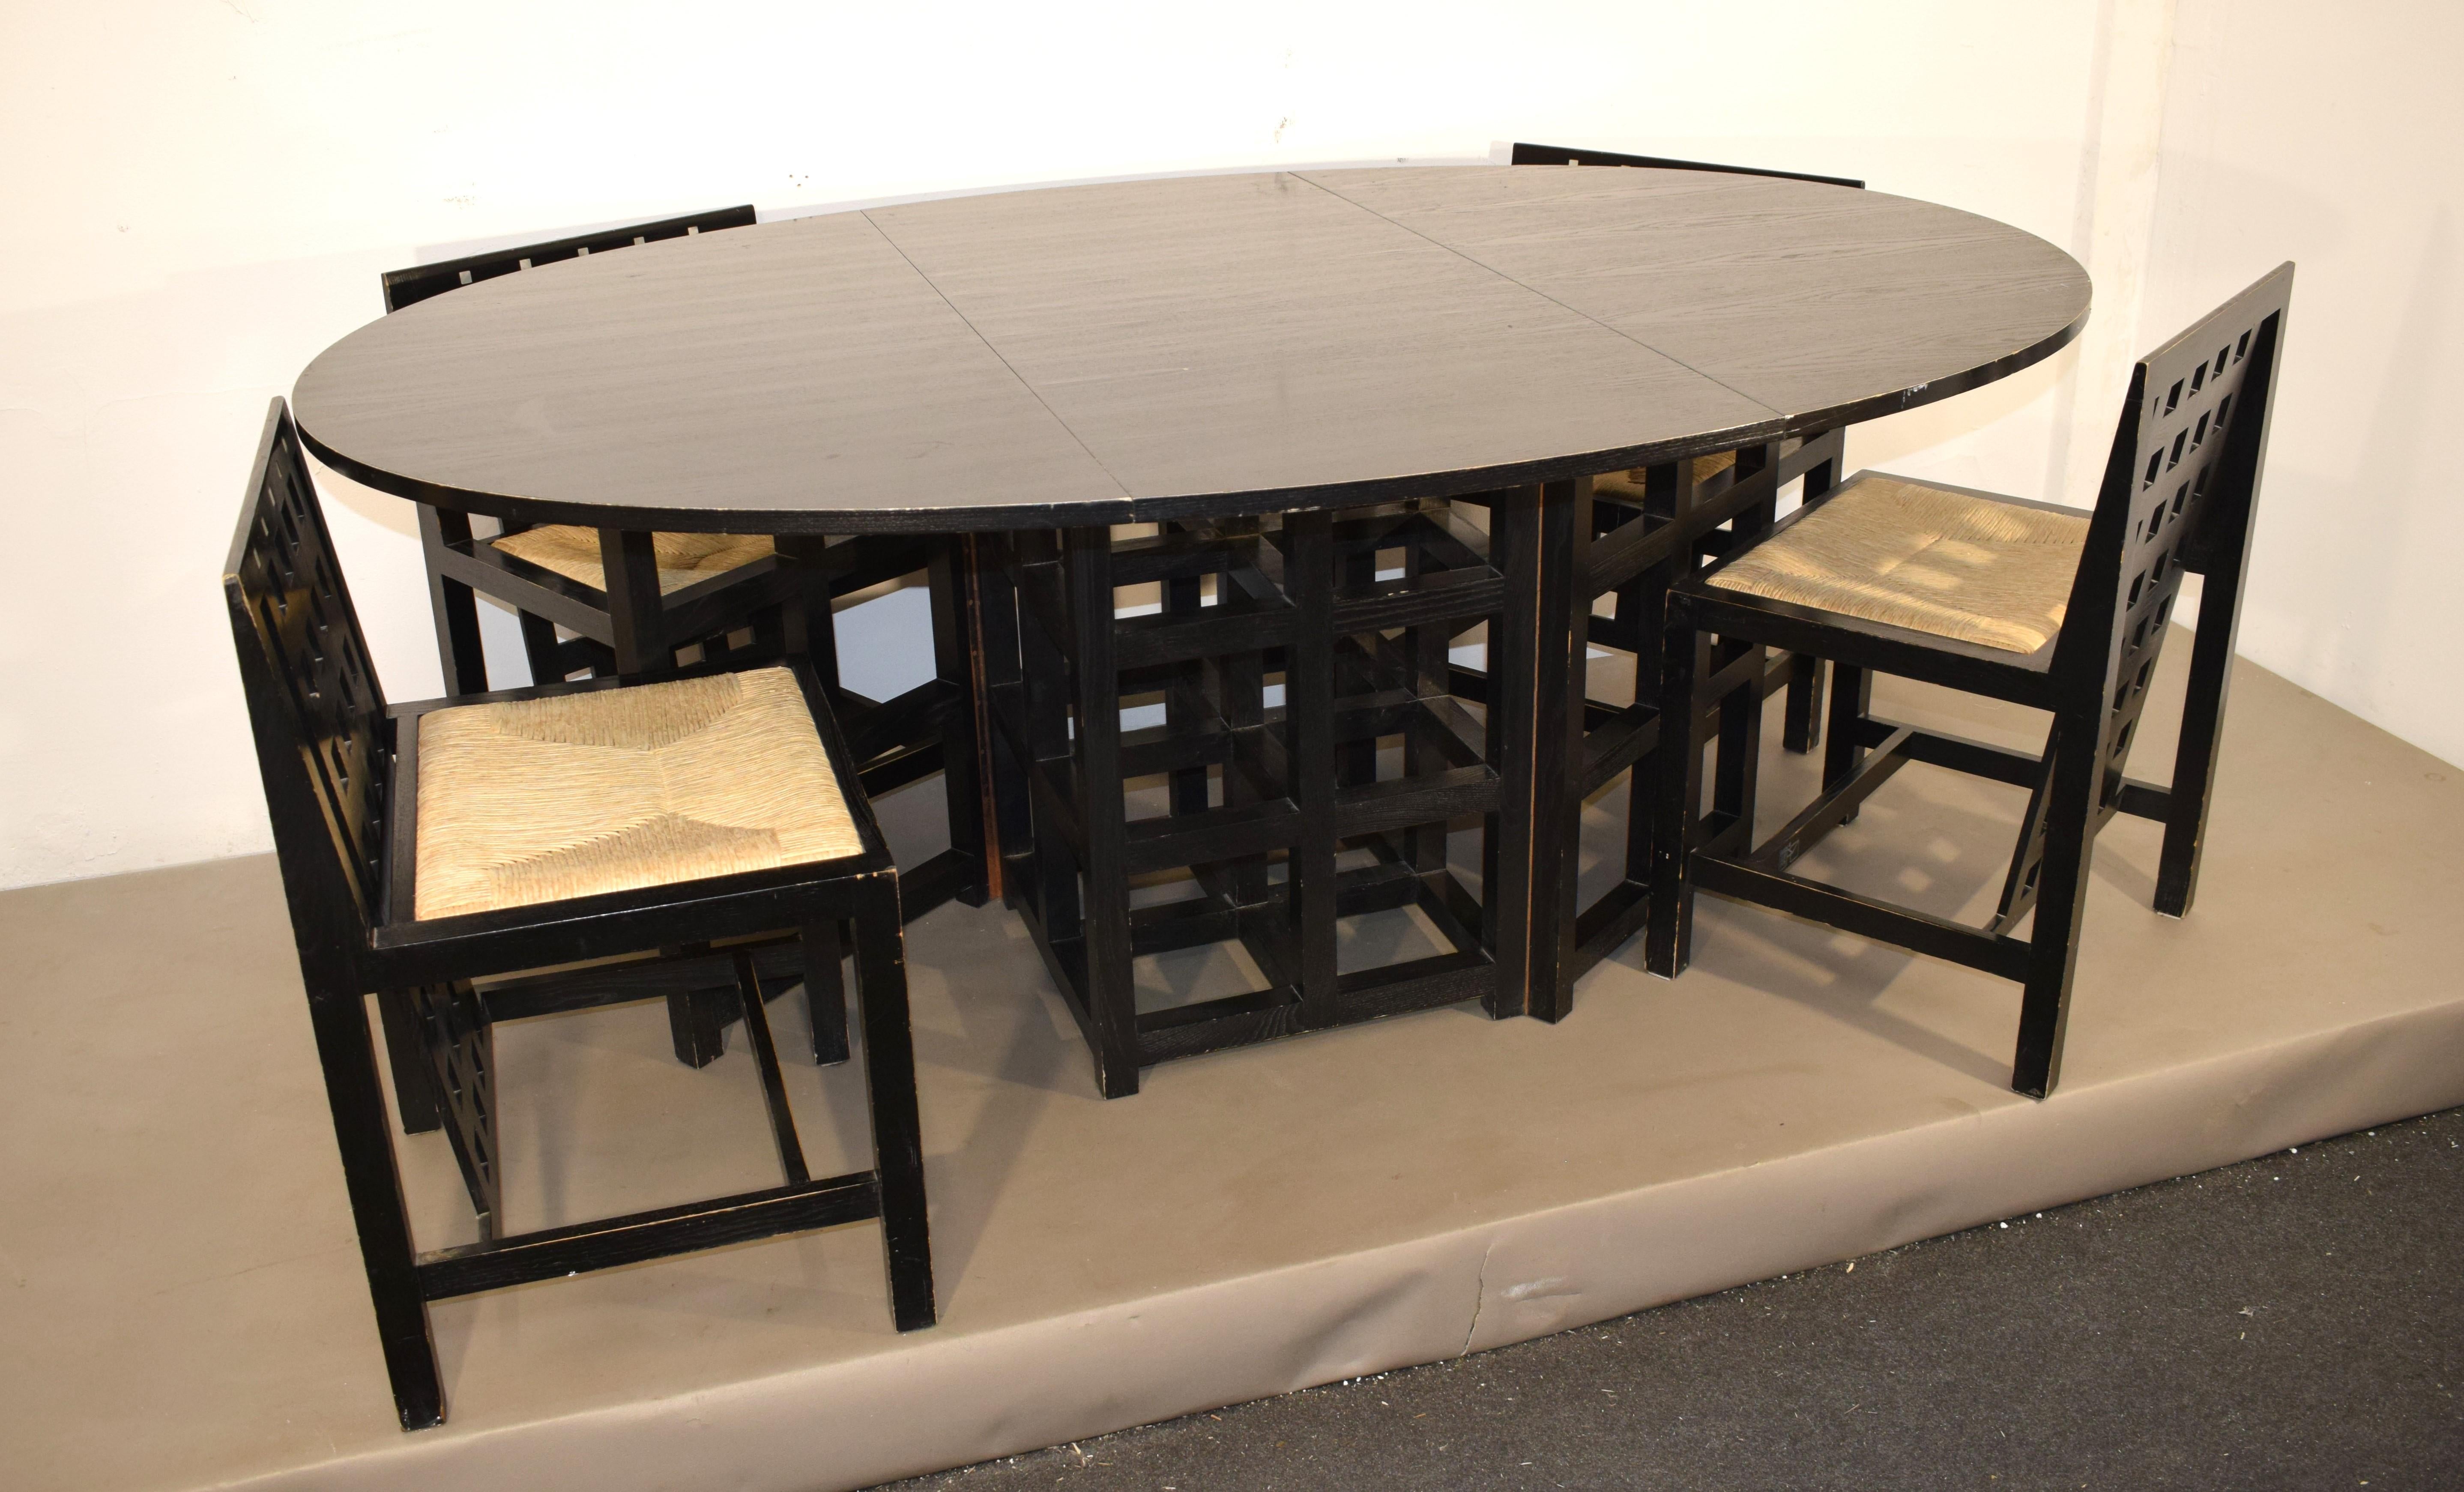 Esstisch und 4 Stühle von Charles Rennie Mackintosh für Cassina, 1970er Jahre.
Abmessungen: 
offener Tisch H= 75 cm; B= 177 cm; T= 125.
geschlossener Tisch H= 75 cm; B= 125 cm; T= 58 cm.
stuhl H= 75 cm; B= 49 cm; T= 45 cm; H Sitz= 45 cm. 
